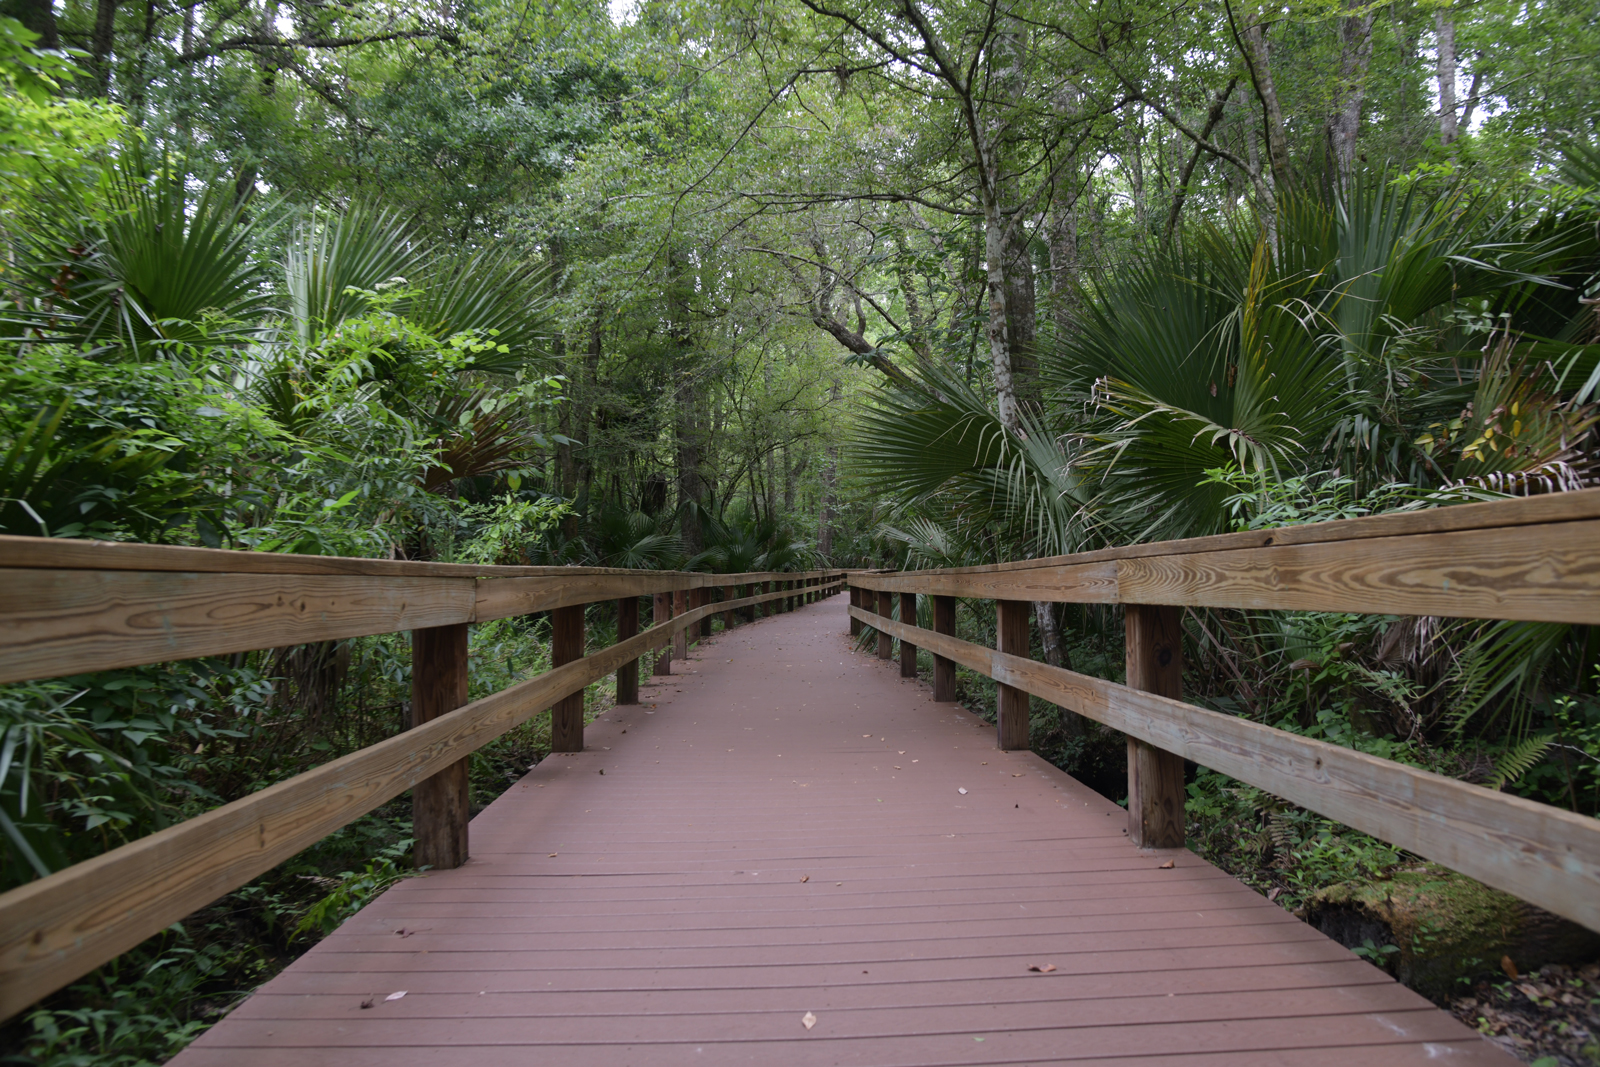 Big Tree Park boardwalk in Longwood, FL